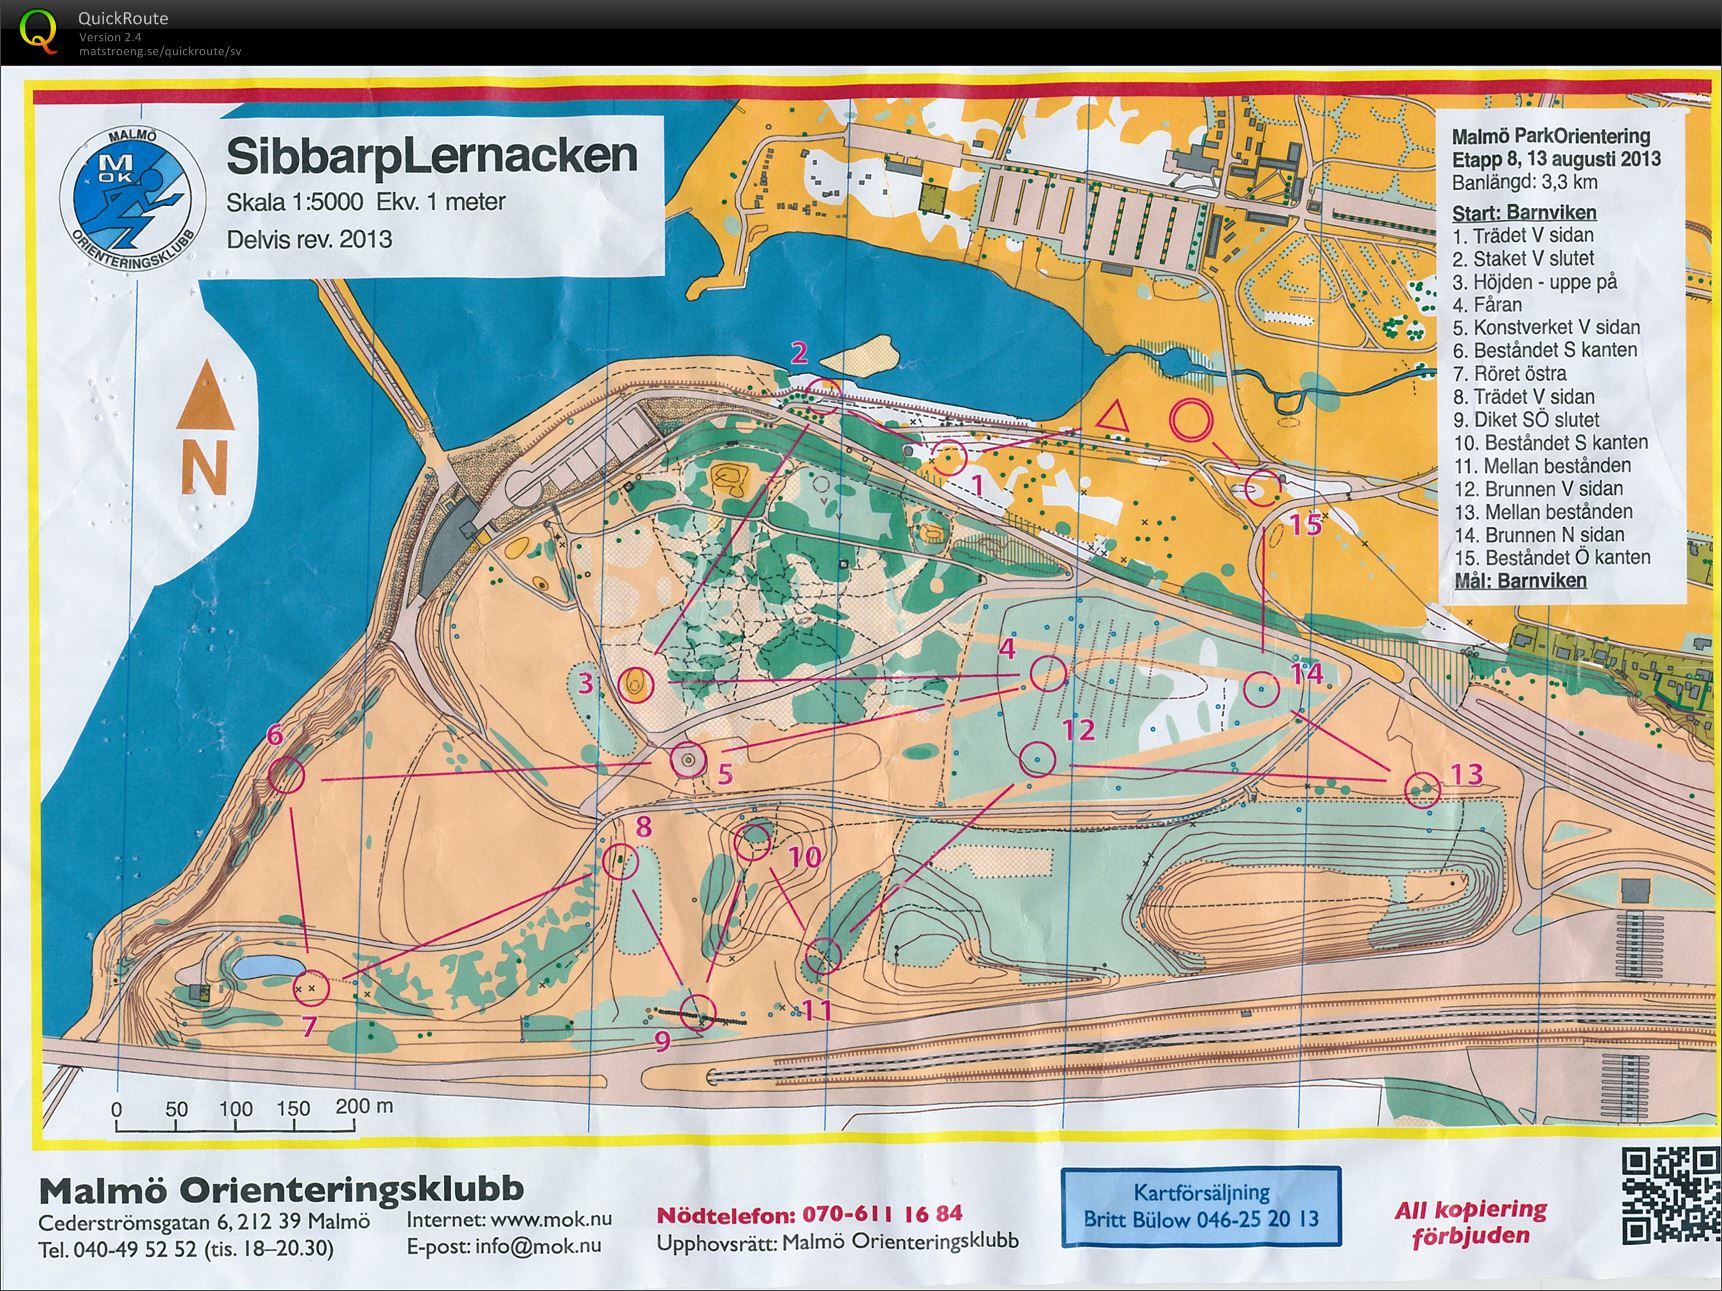 Malmö Parktävling, etapp 8 (13/08/2013)